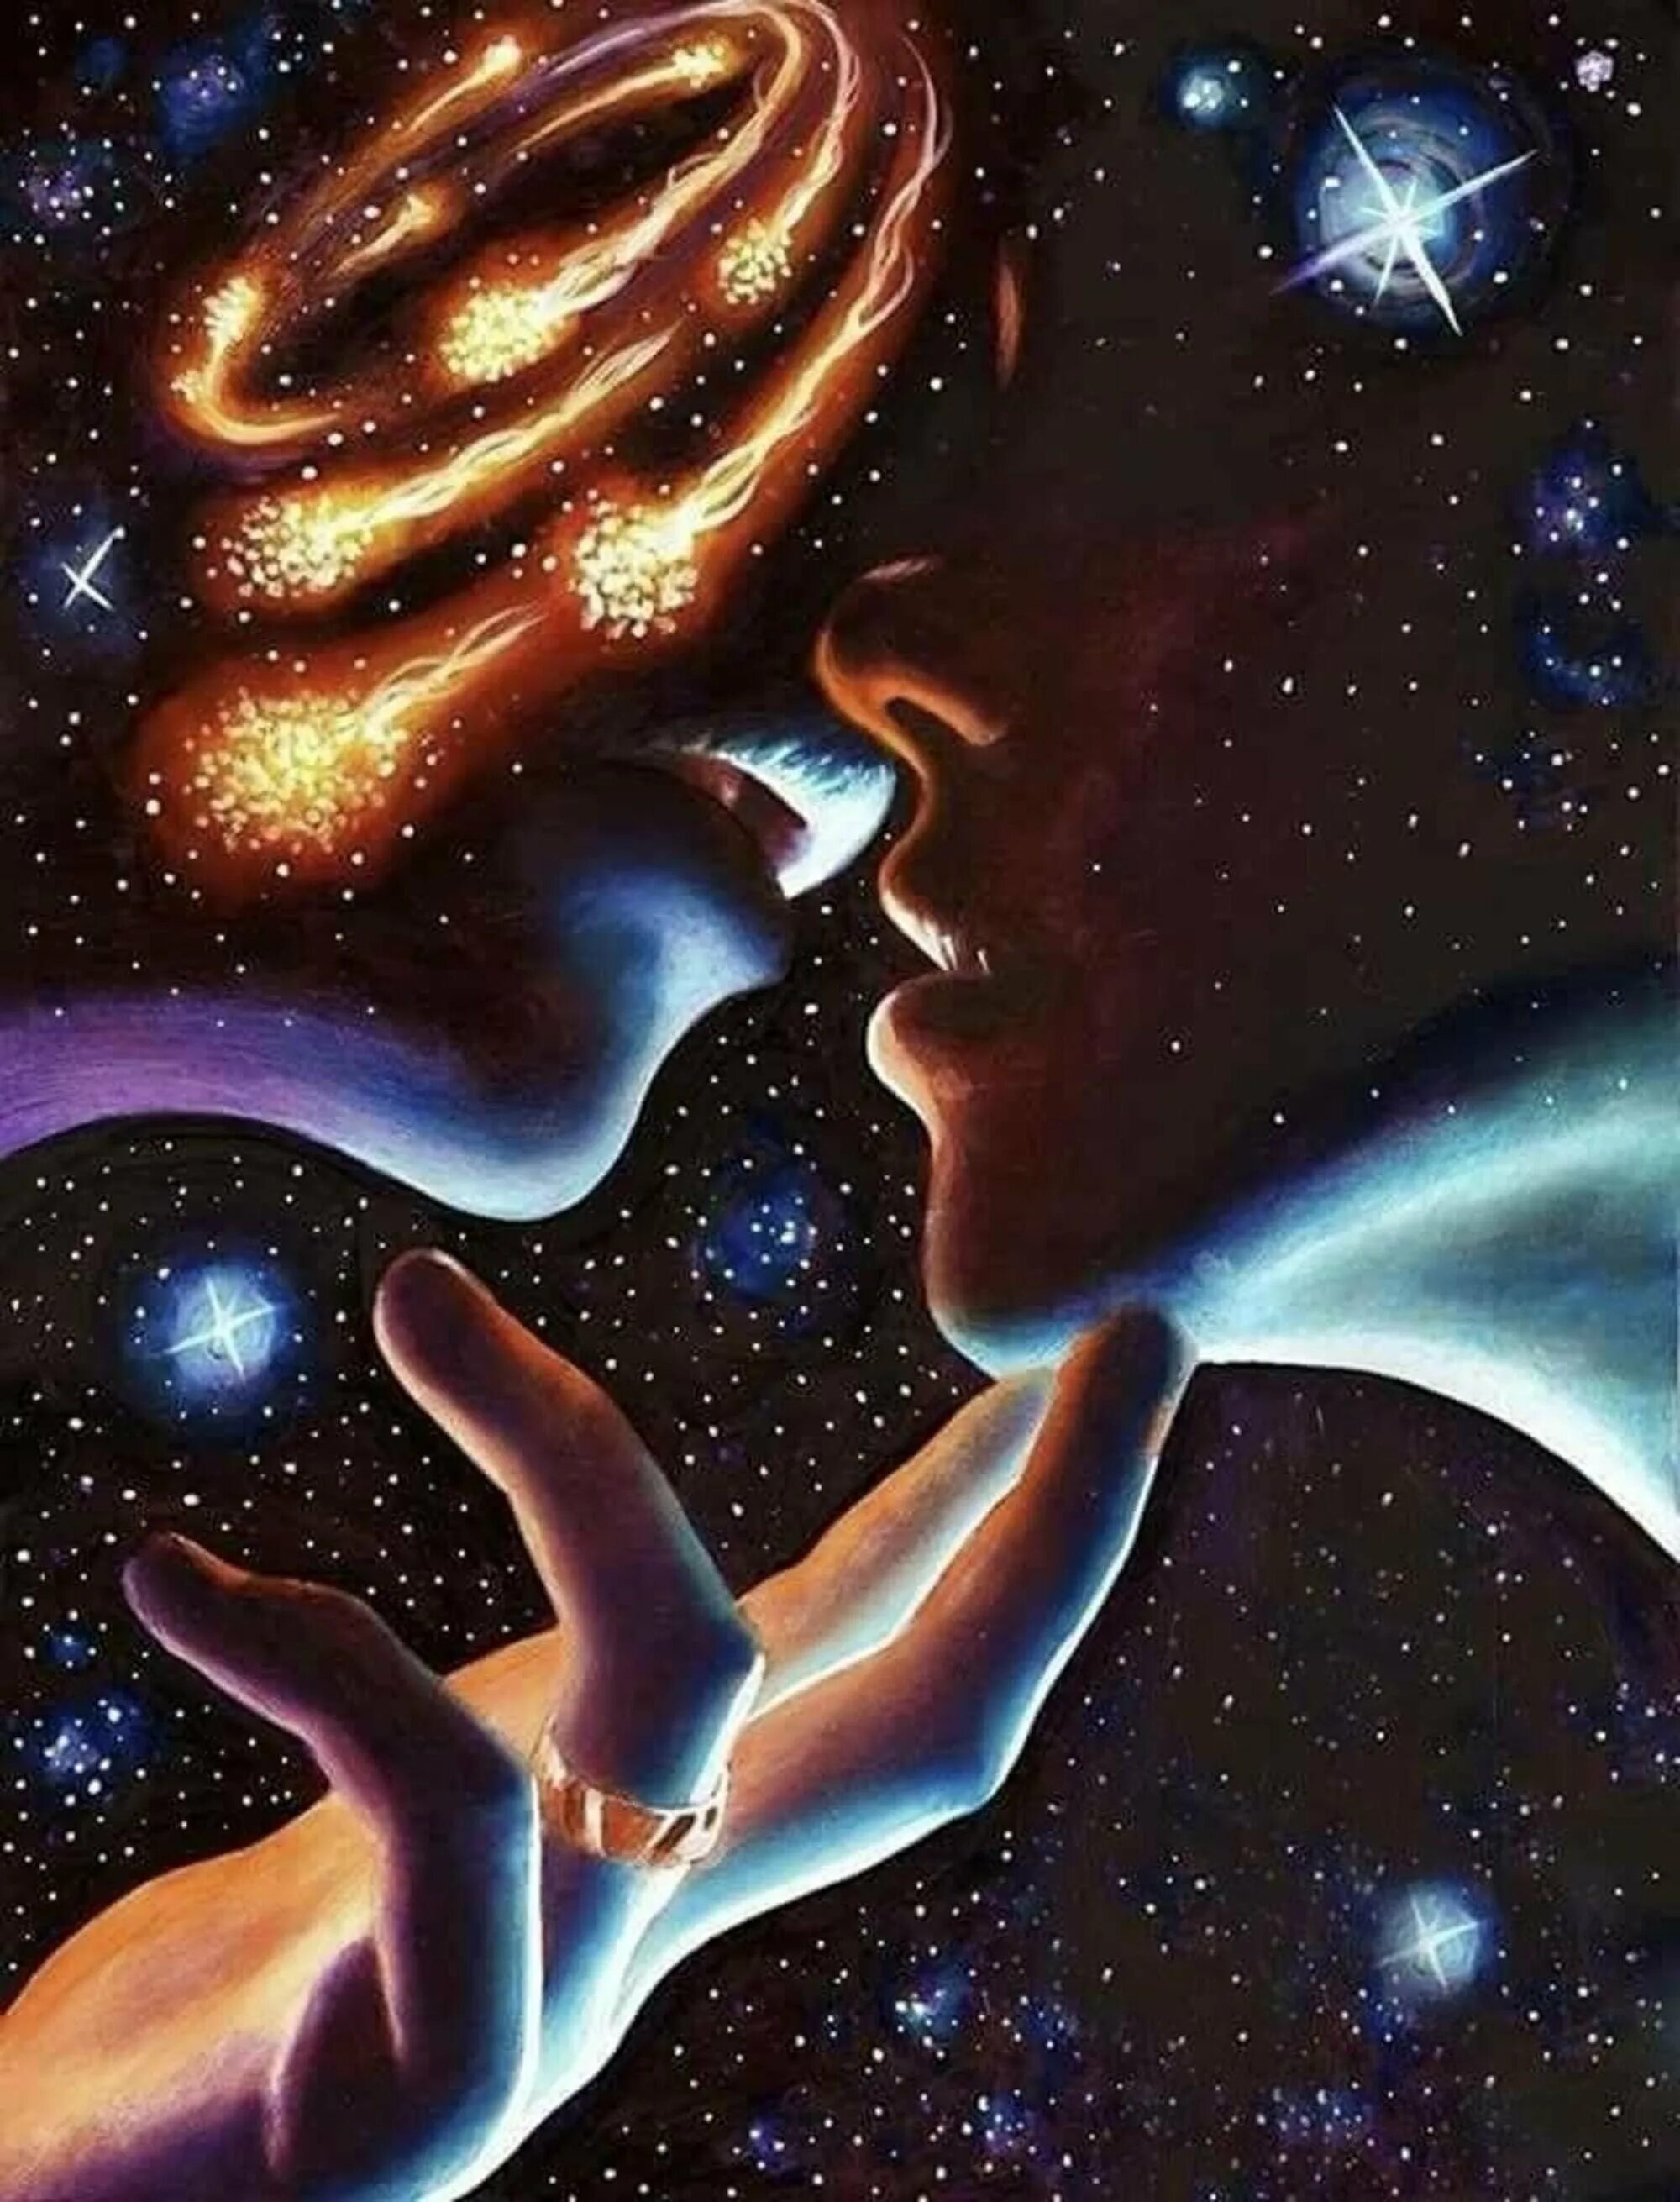 Мужчина и женщина космос. Космическая любовь. Влюбленные в космосе. Вселенная мужчина и женщина. Души близнецовые пламена